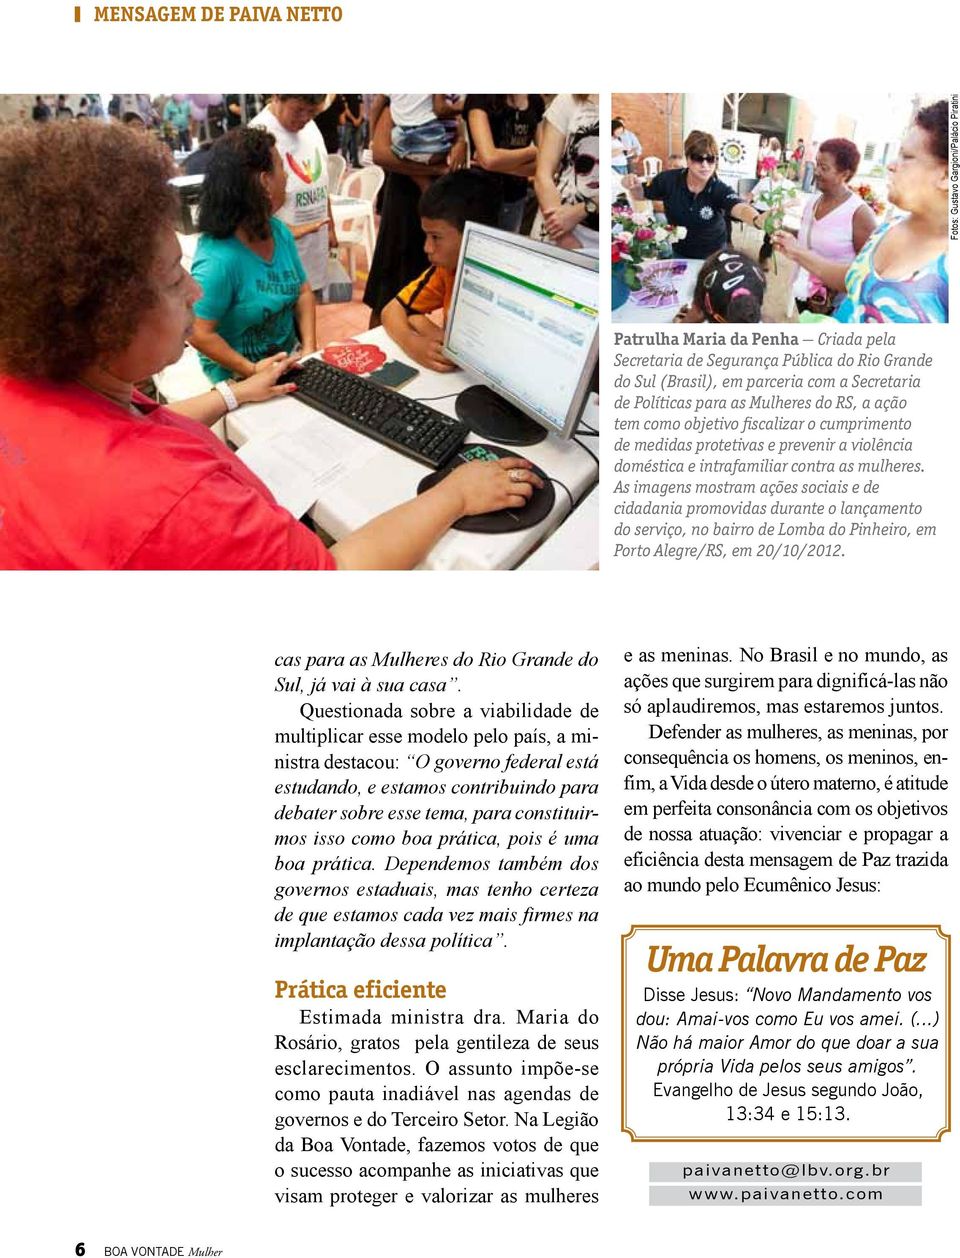 As imagens mostram ações sociais e de cidadania promovidas durante o lançamento do serviço, no bairro de Lomba do Pinheiro, em Porto Alegre/RS, em 20/10/2012.